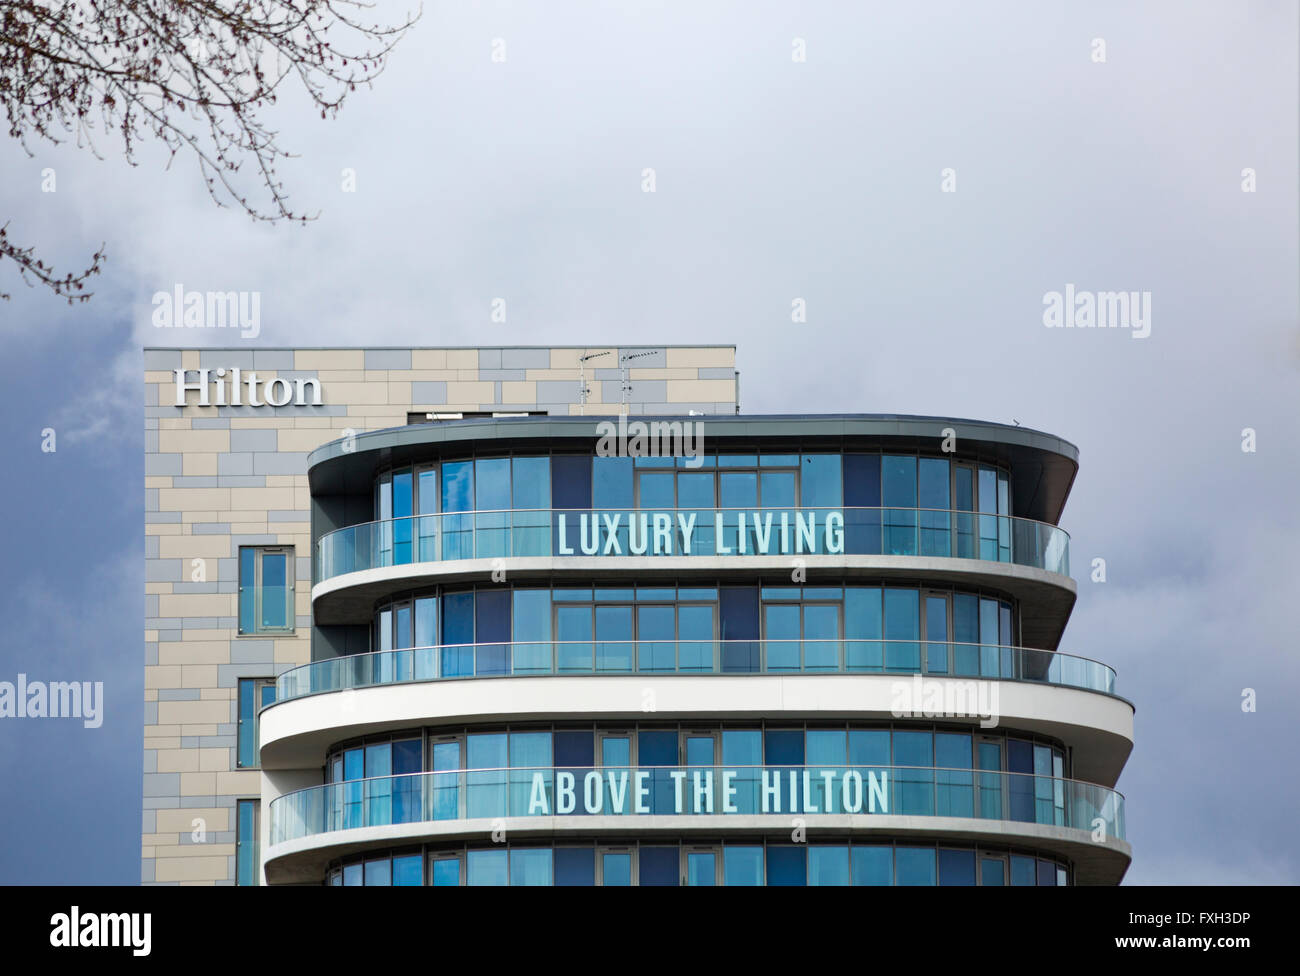 La vie de luxe au-dessus de l'hôtel Hilton de bâtiments à Bournemouth Banque D'Images